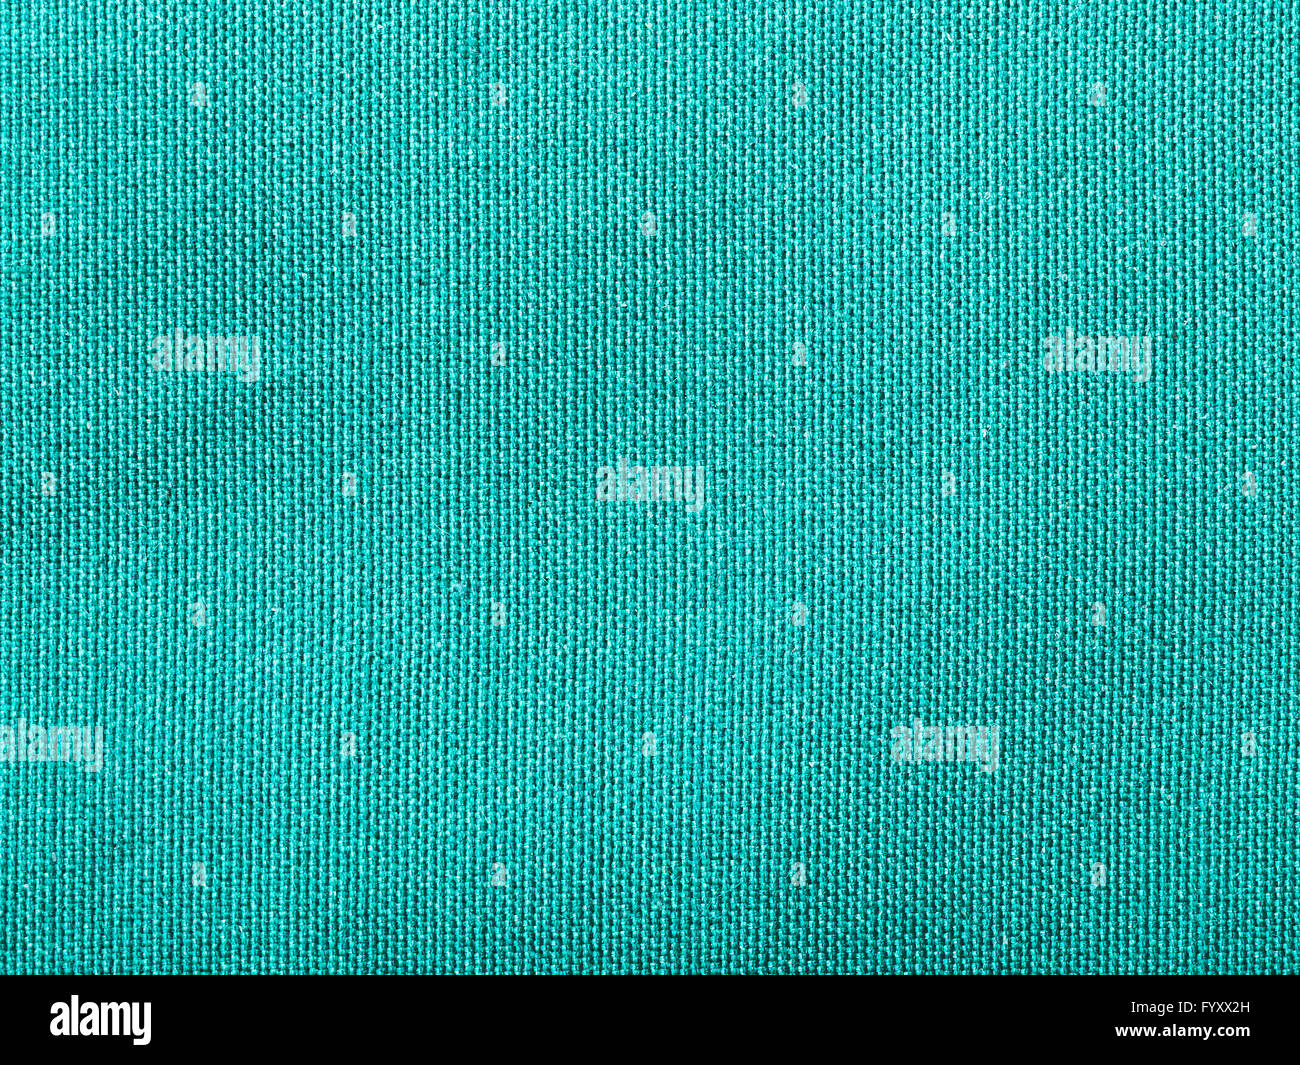 Fond textile - soie taffeta vert tissu avec motif de tissage de fils close up Banque D'Images